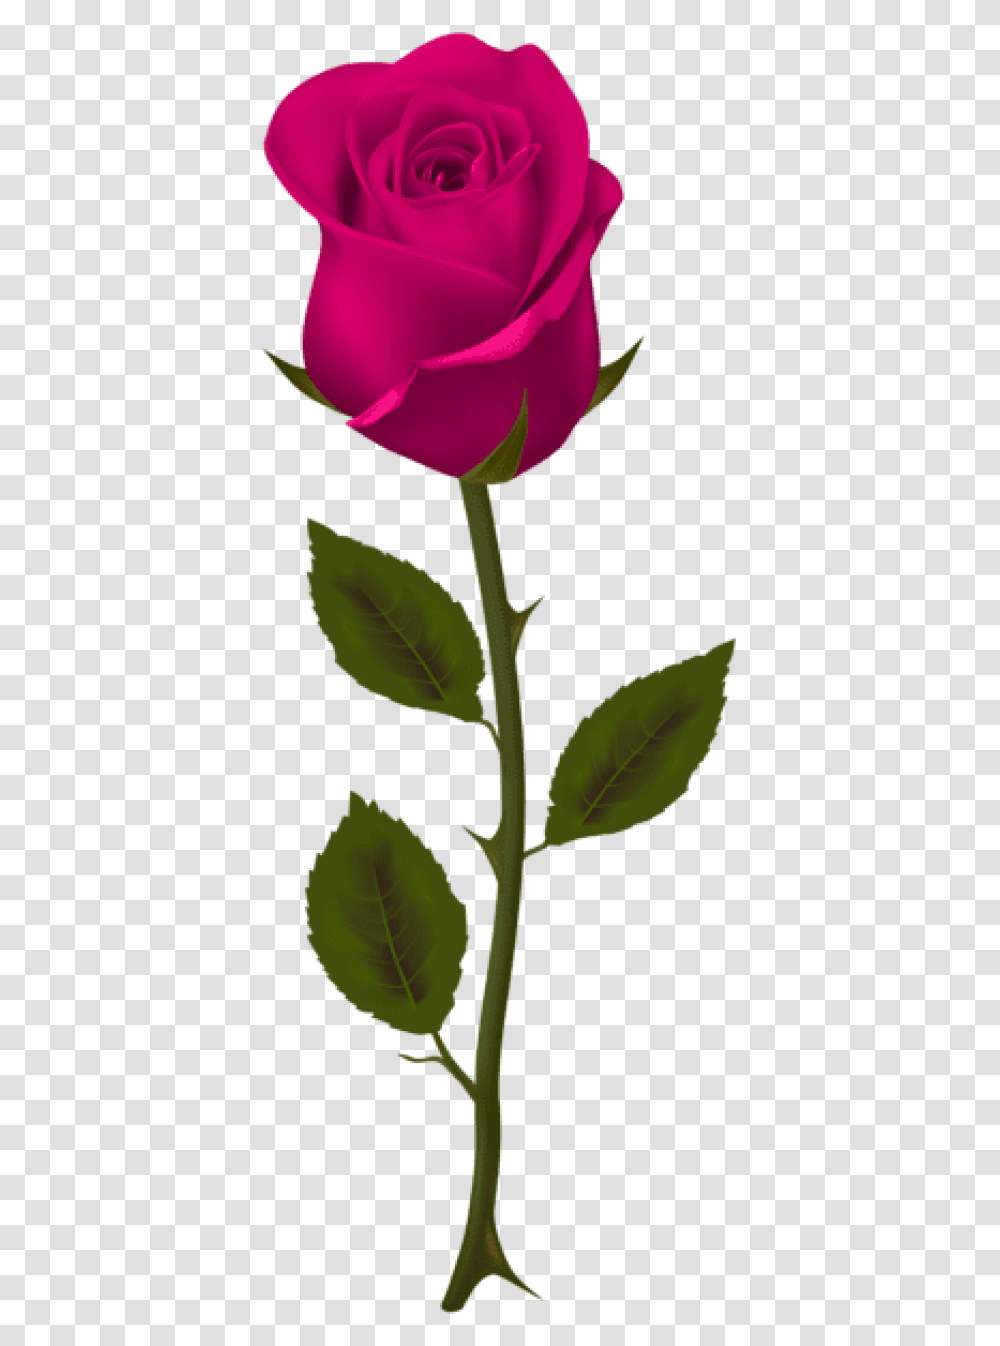 Free Pink Rose Images Background Dark Red Roses, Plant, Flower, Blossom, Leaf Transparent Png